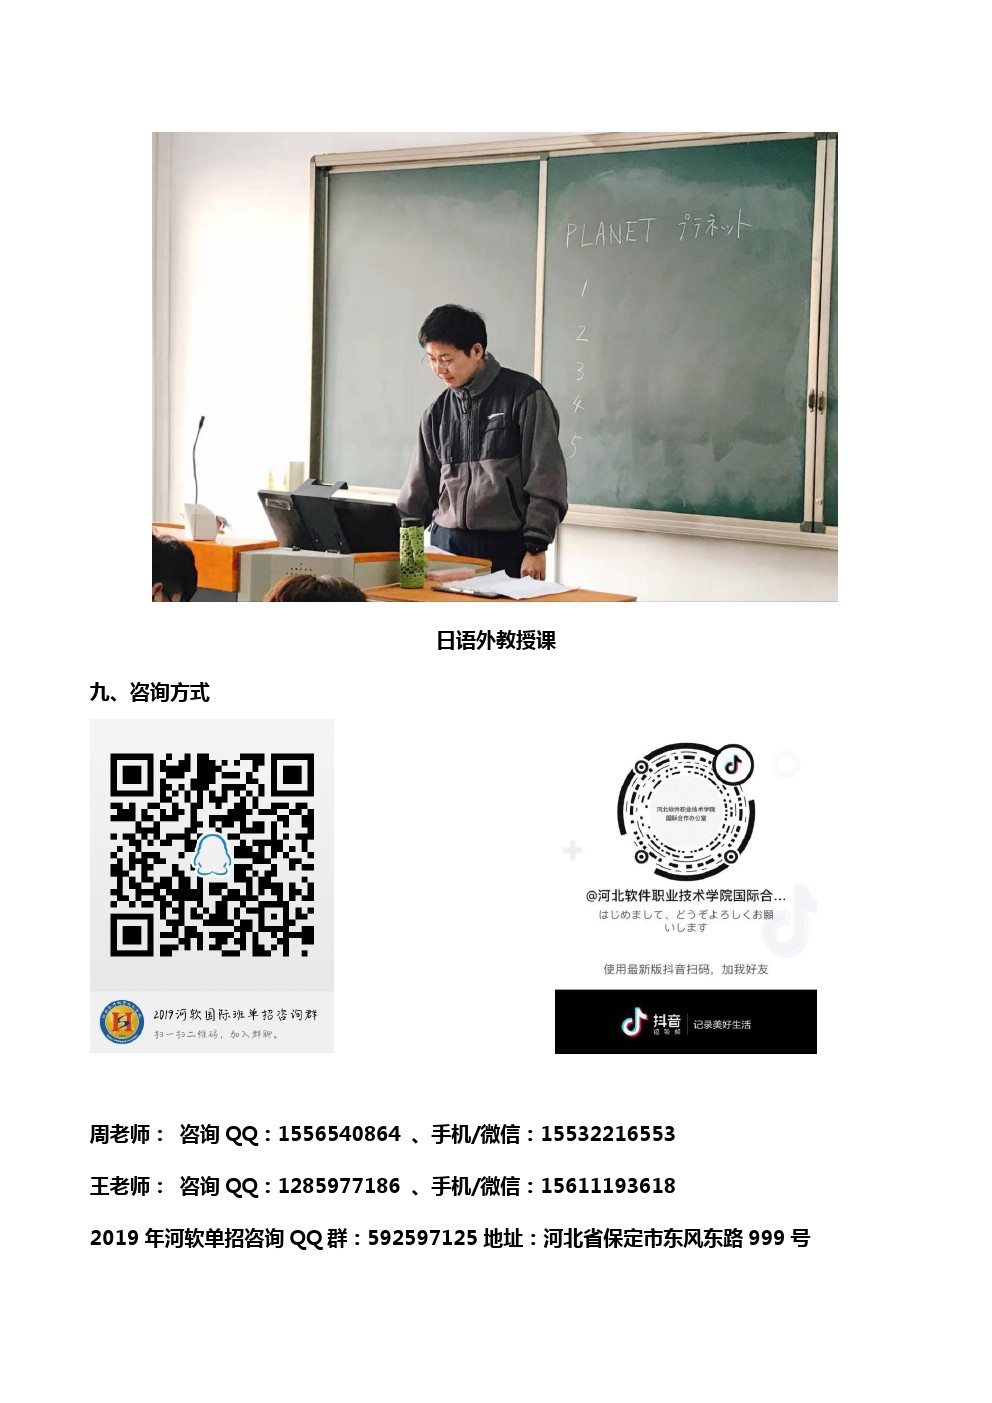 河北App职业技术学院国际班招生简章 